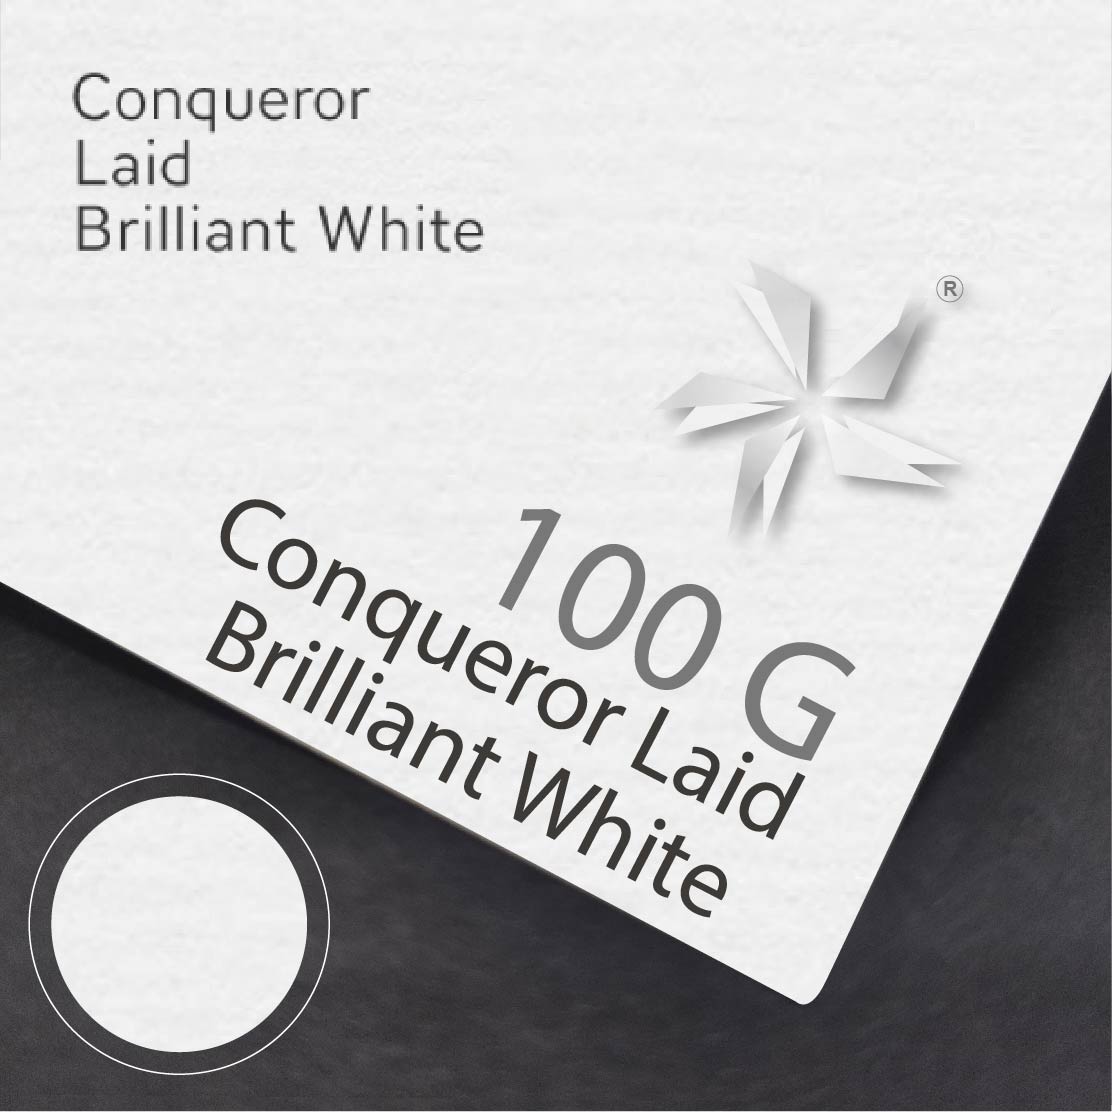 Brilliant White Laid 100gsm